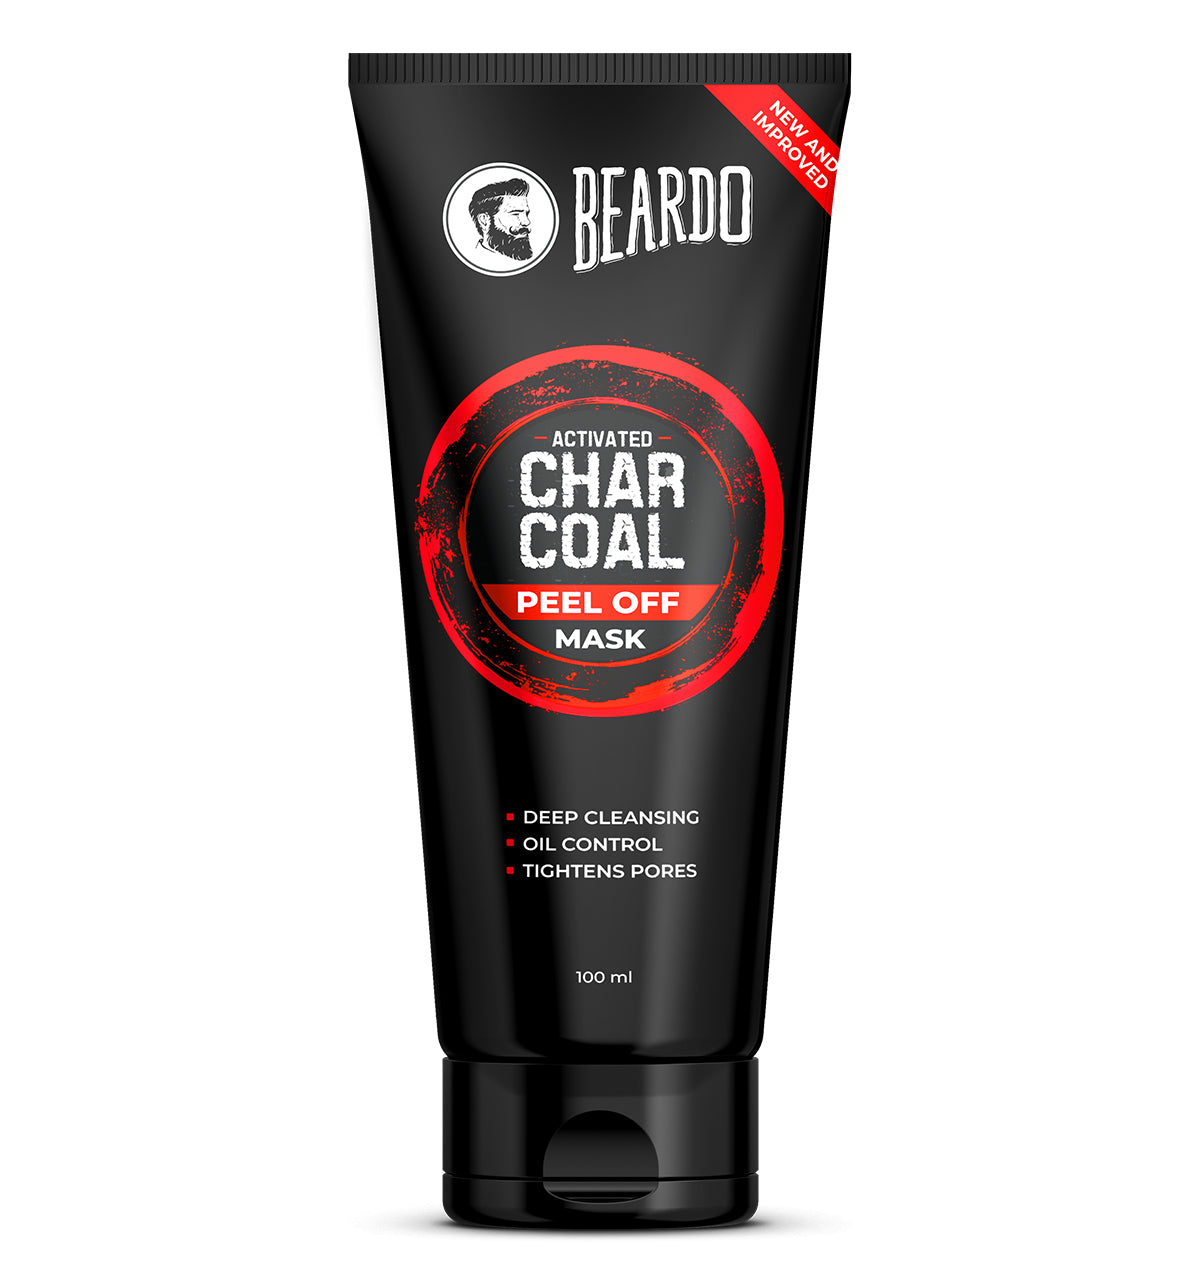 activated charcoal peel off mask, beardo activated charcoal mask. peel off mask for men, charcoal face mask